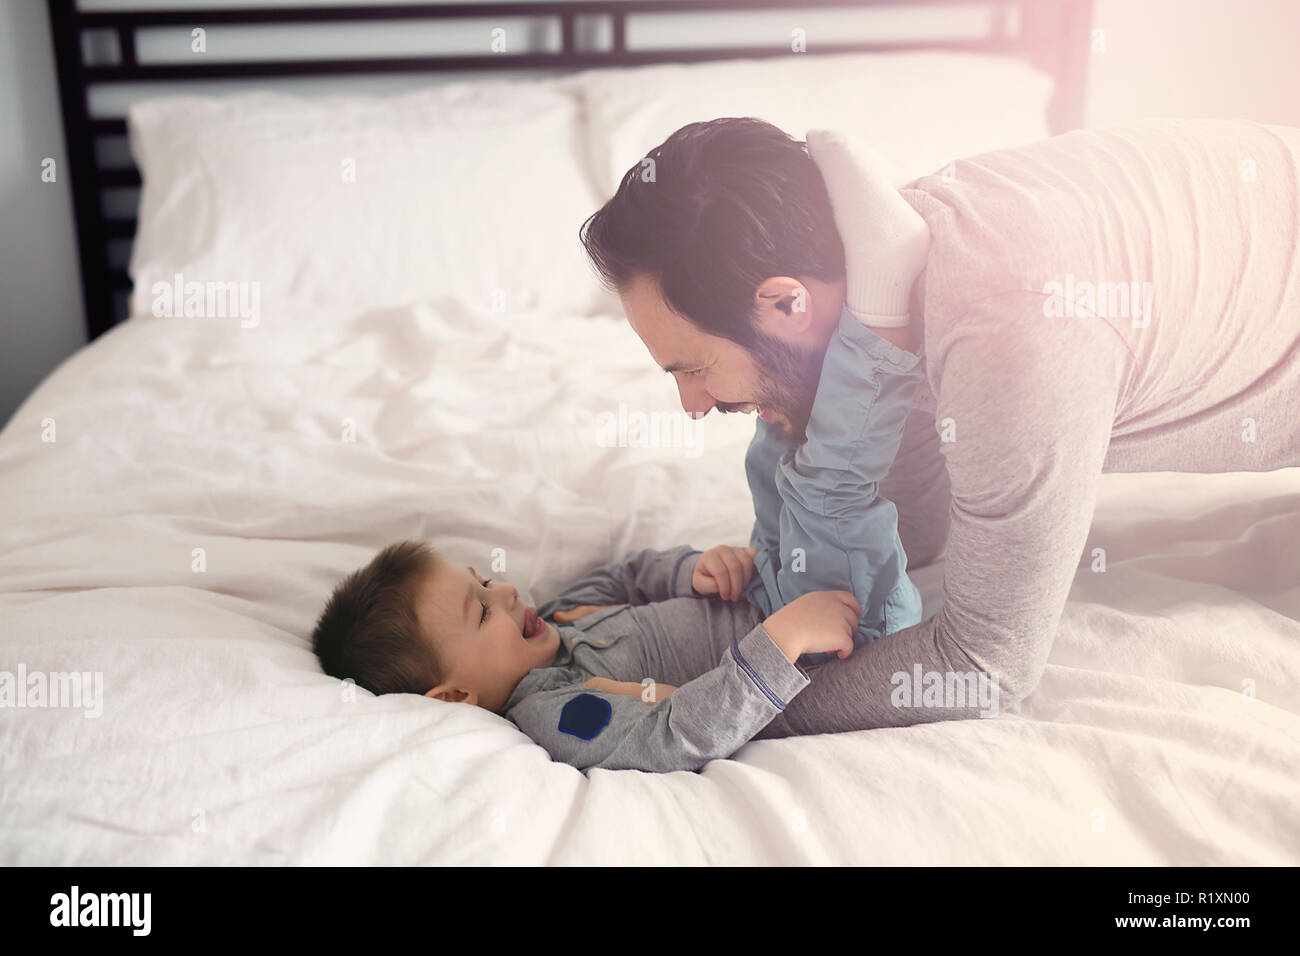 Vater und Sohn im Bett, glückliche Zeit auf dem Bett Stockfoto